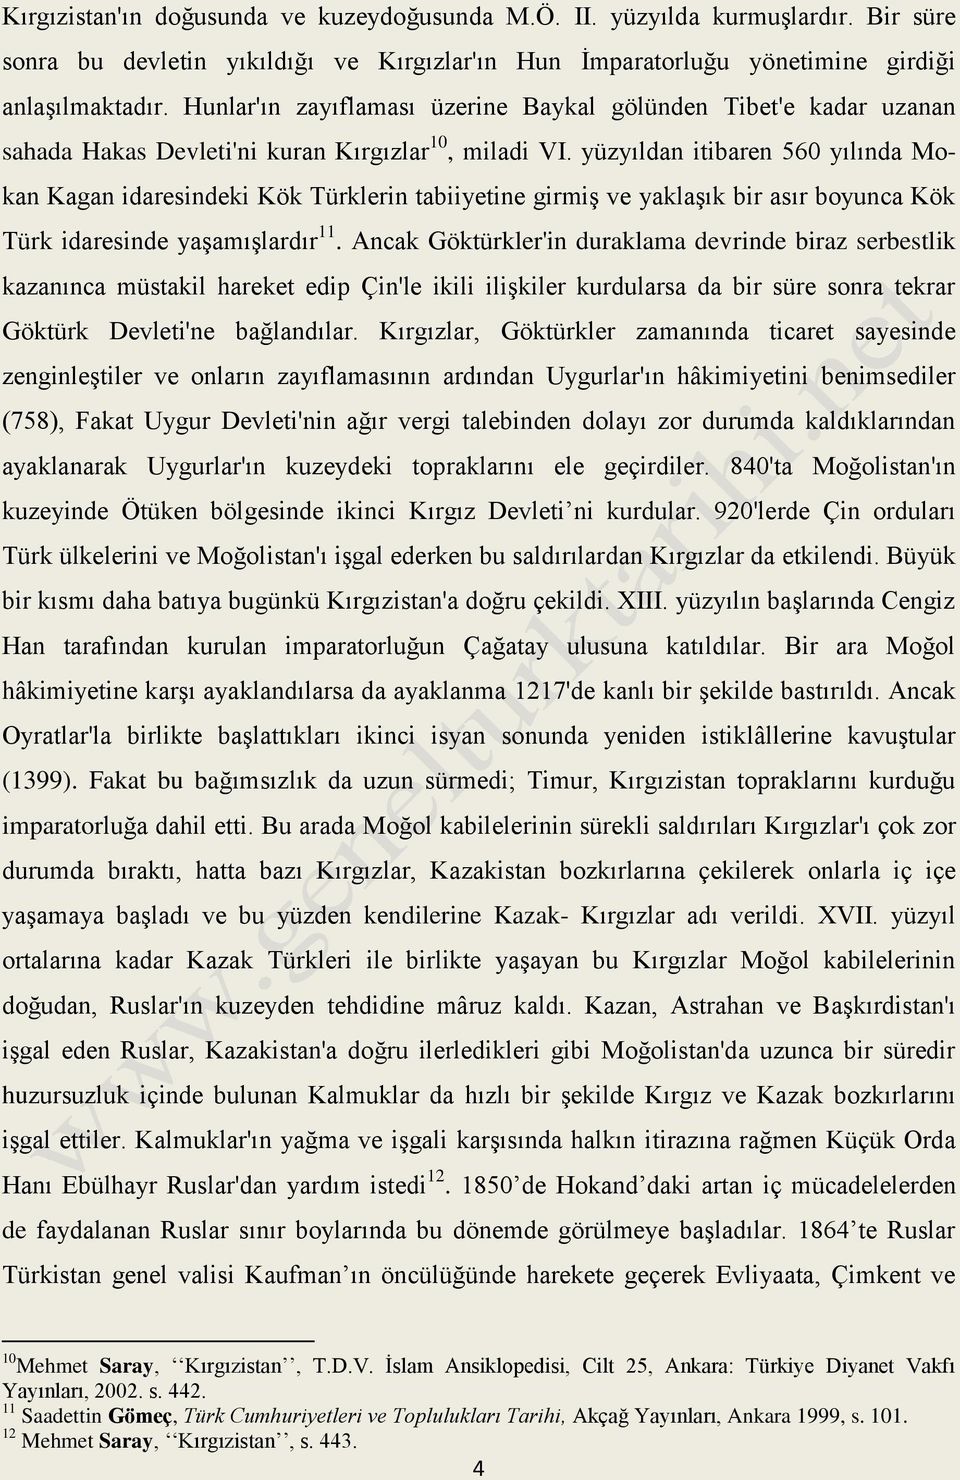 yüzyıldan itibaren 560 yılında Mokan Kagan idaresindeki Kök Türklerin tabiiyetine girmiş ve yaklaşık bir asır boyunca Kök Türk idaresinde yaşamışlardır 11.